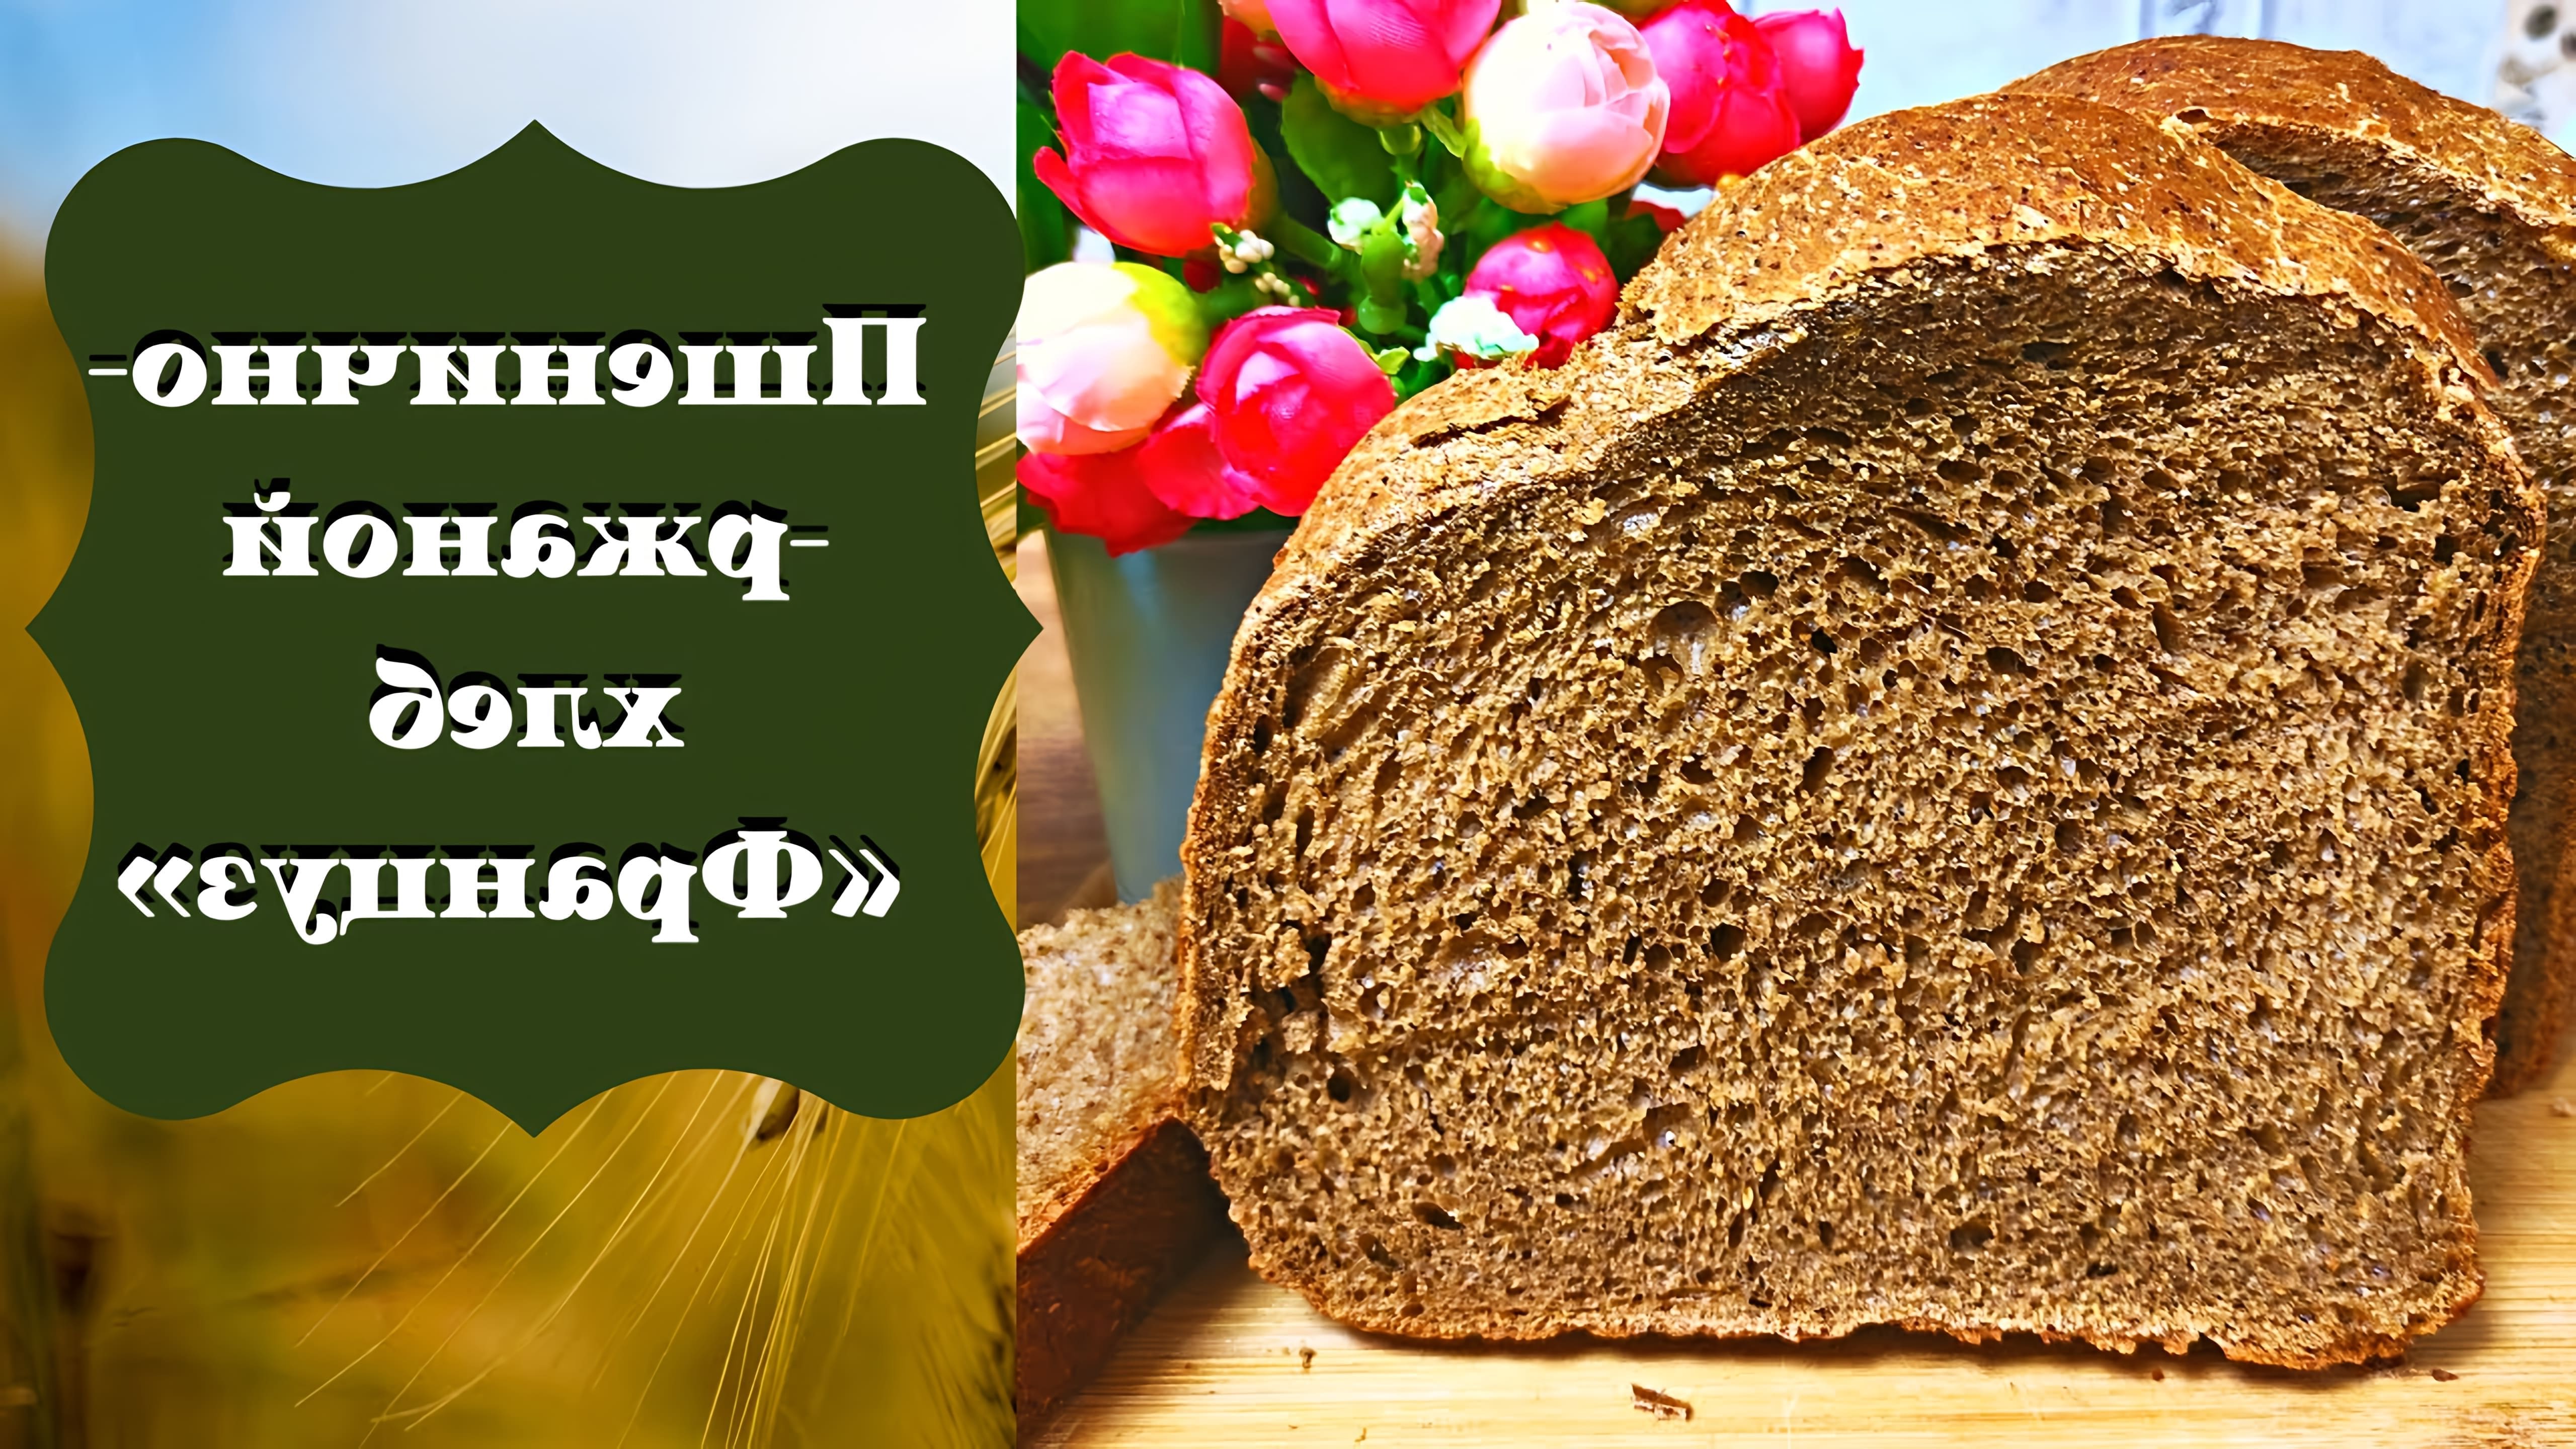 В этом видео демонстрируется процесс приготовления ржано-пшеничного хлеба "Француз" в хлебопечке